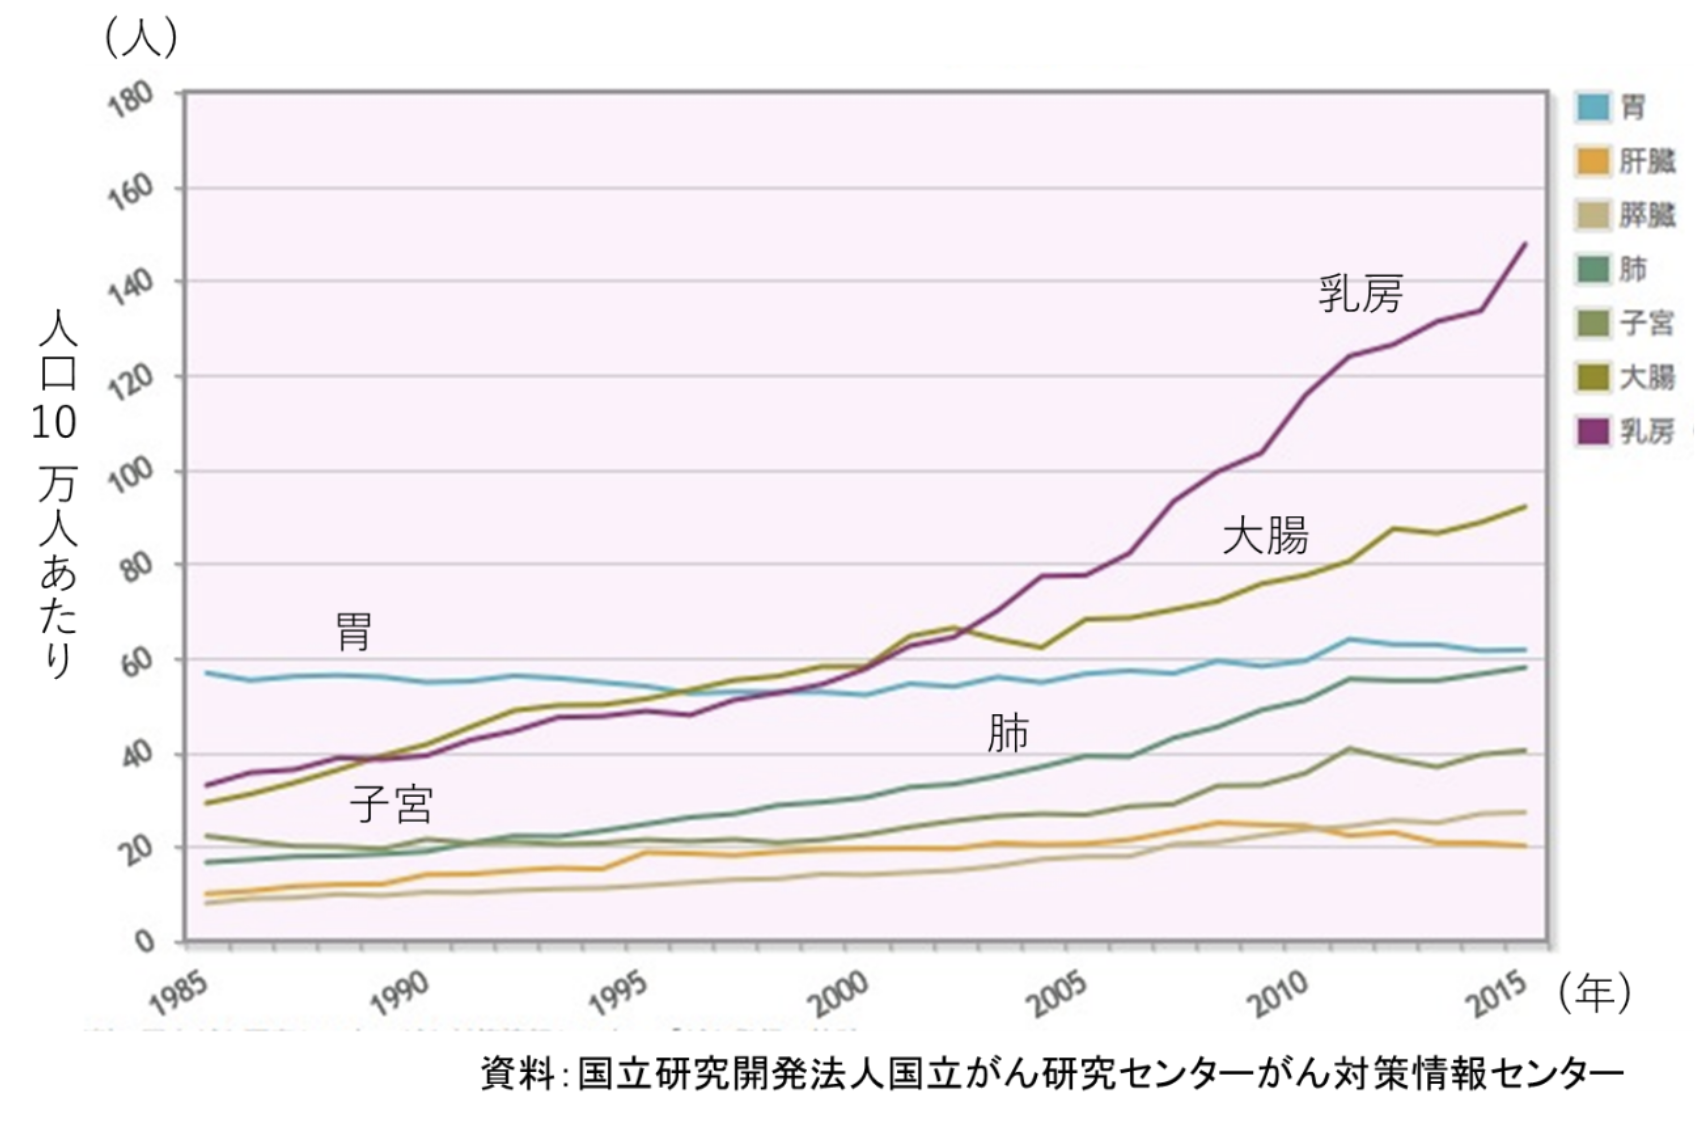 【図1】  部位別がんの罹患率の推移(日本人女性)